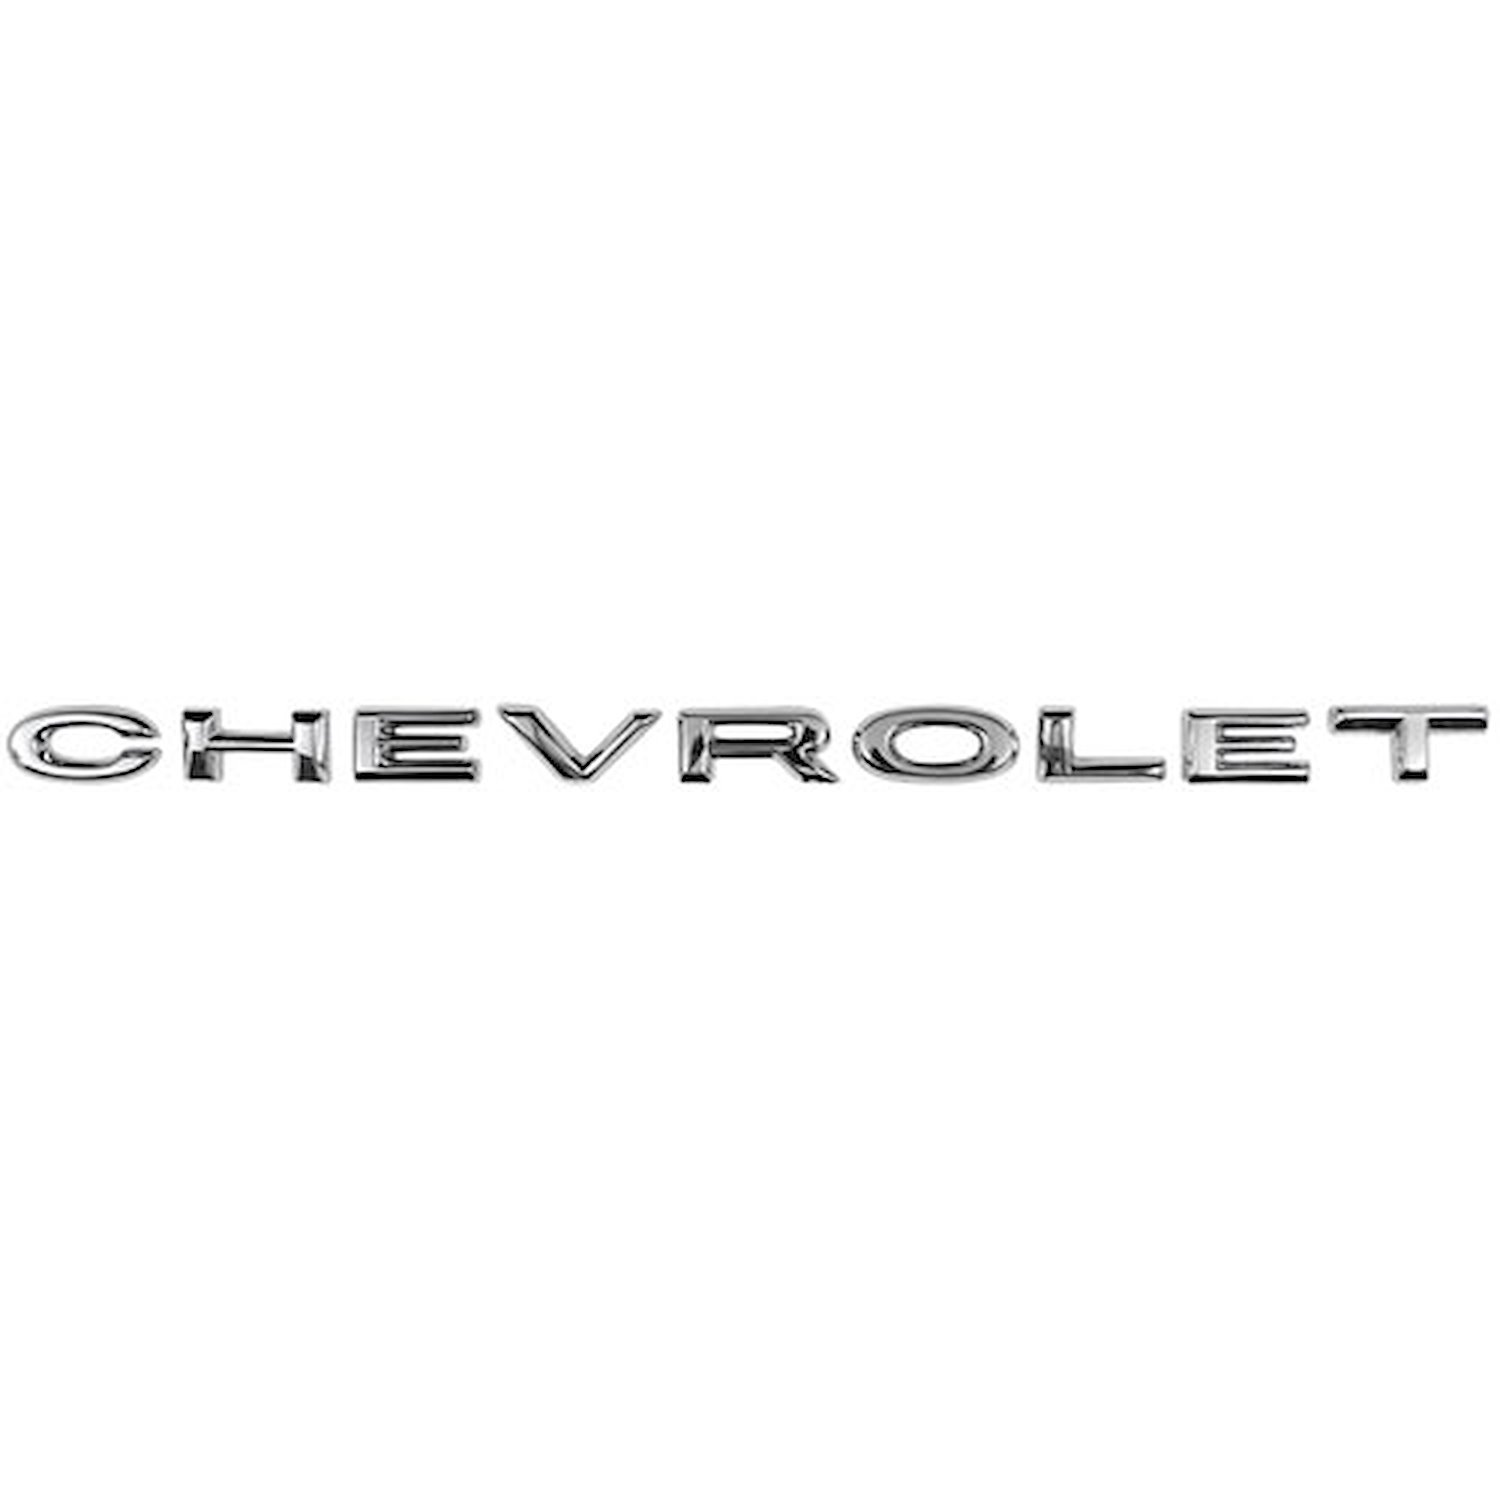 Hood Emblem Letters 1965 Chevy Chevelle & El